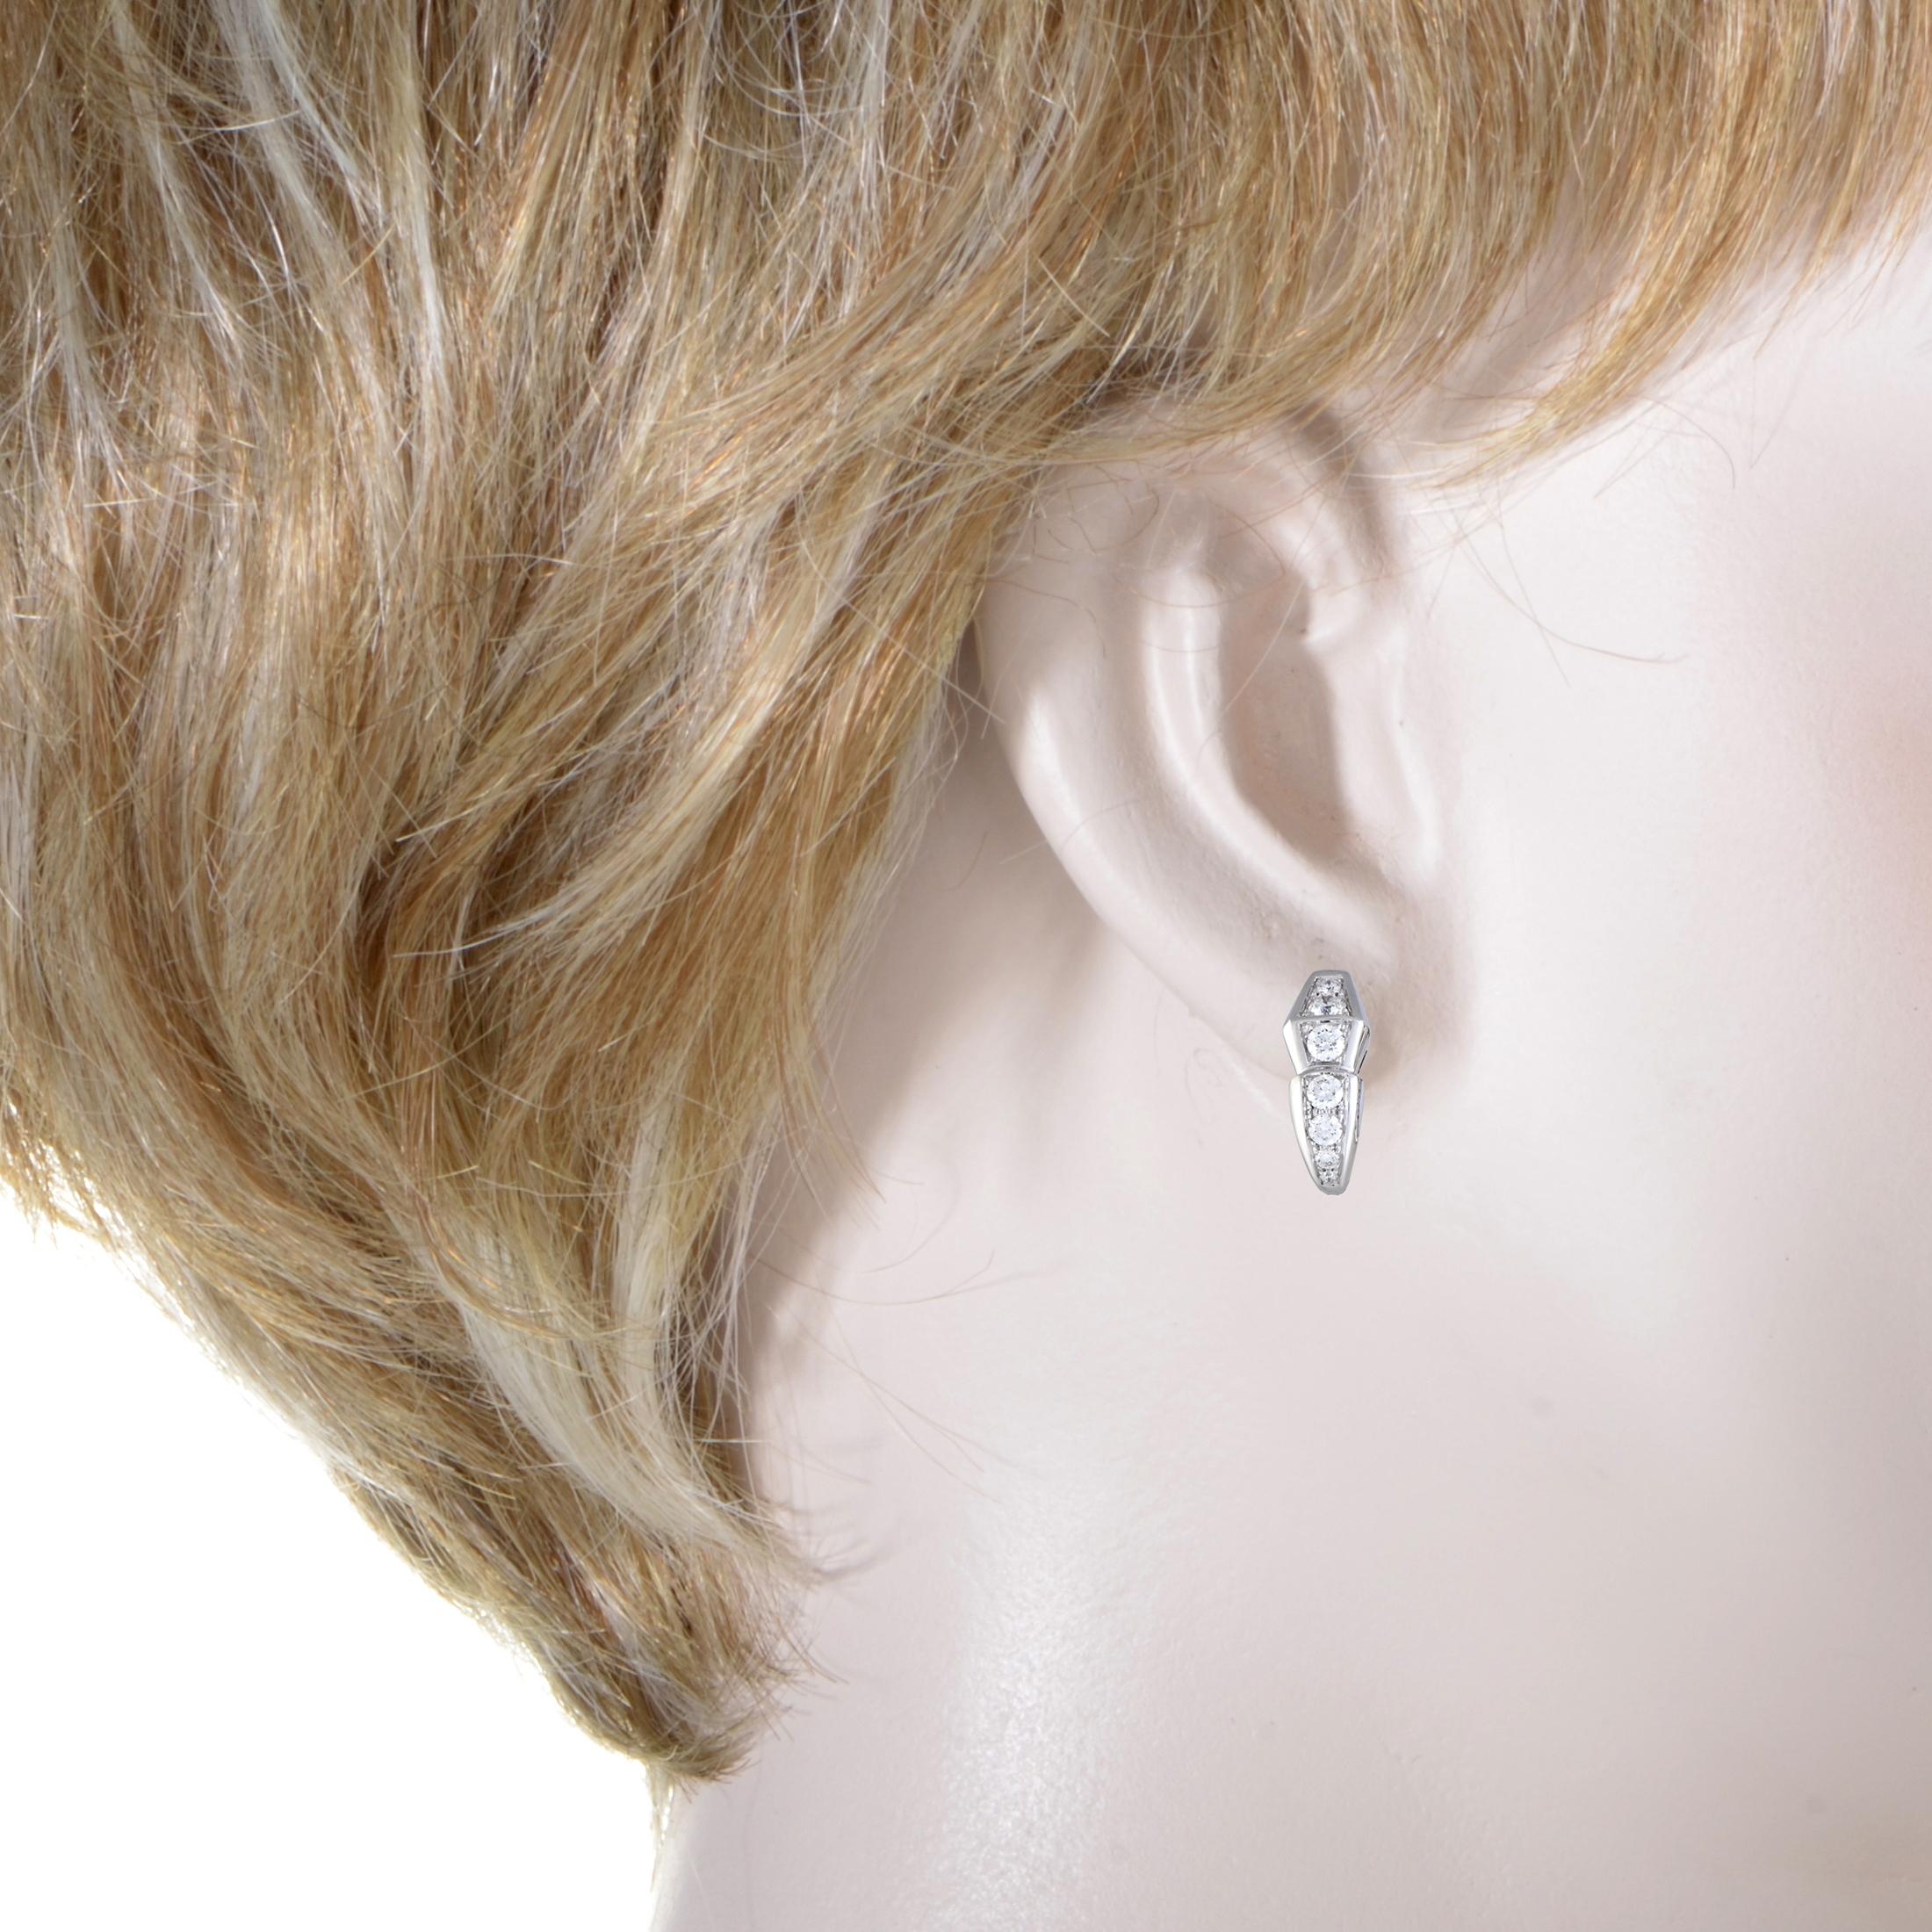 Élégamment conçue en or blanc 18 carats:: cette belle paire de boucles d'oreilles de Bvlgari est sophistiquée et glamour. Les superbes boucles d'oreilles sont ornées d'un pavage étincelant de 1::28 ct de diamants qui font ressortir l'extravagance de